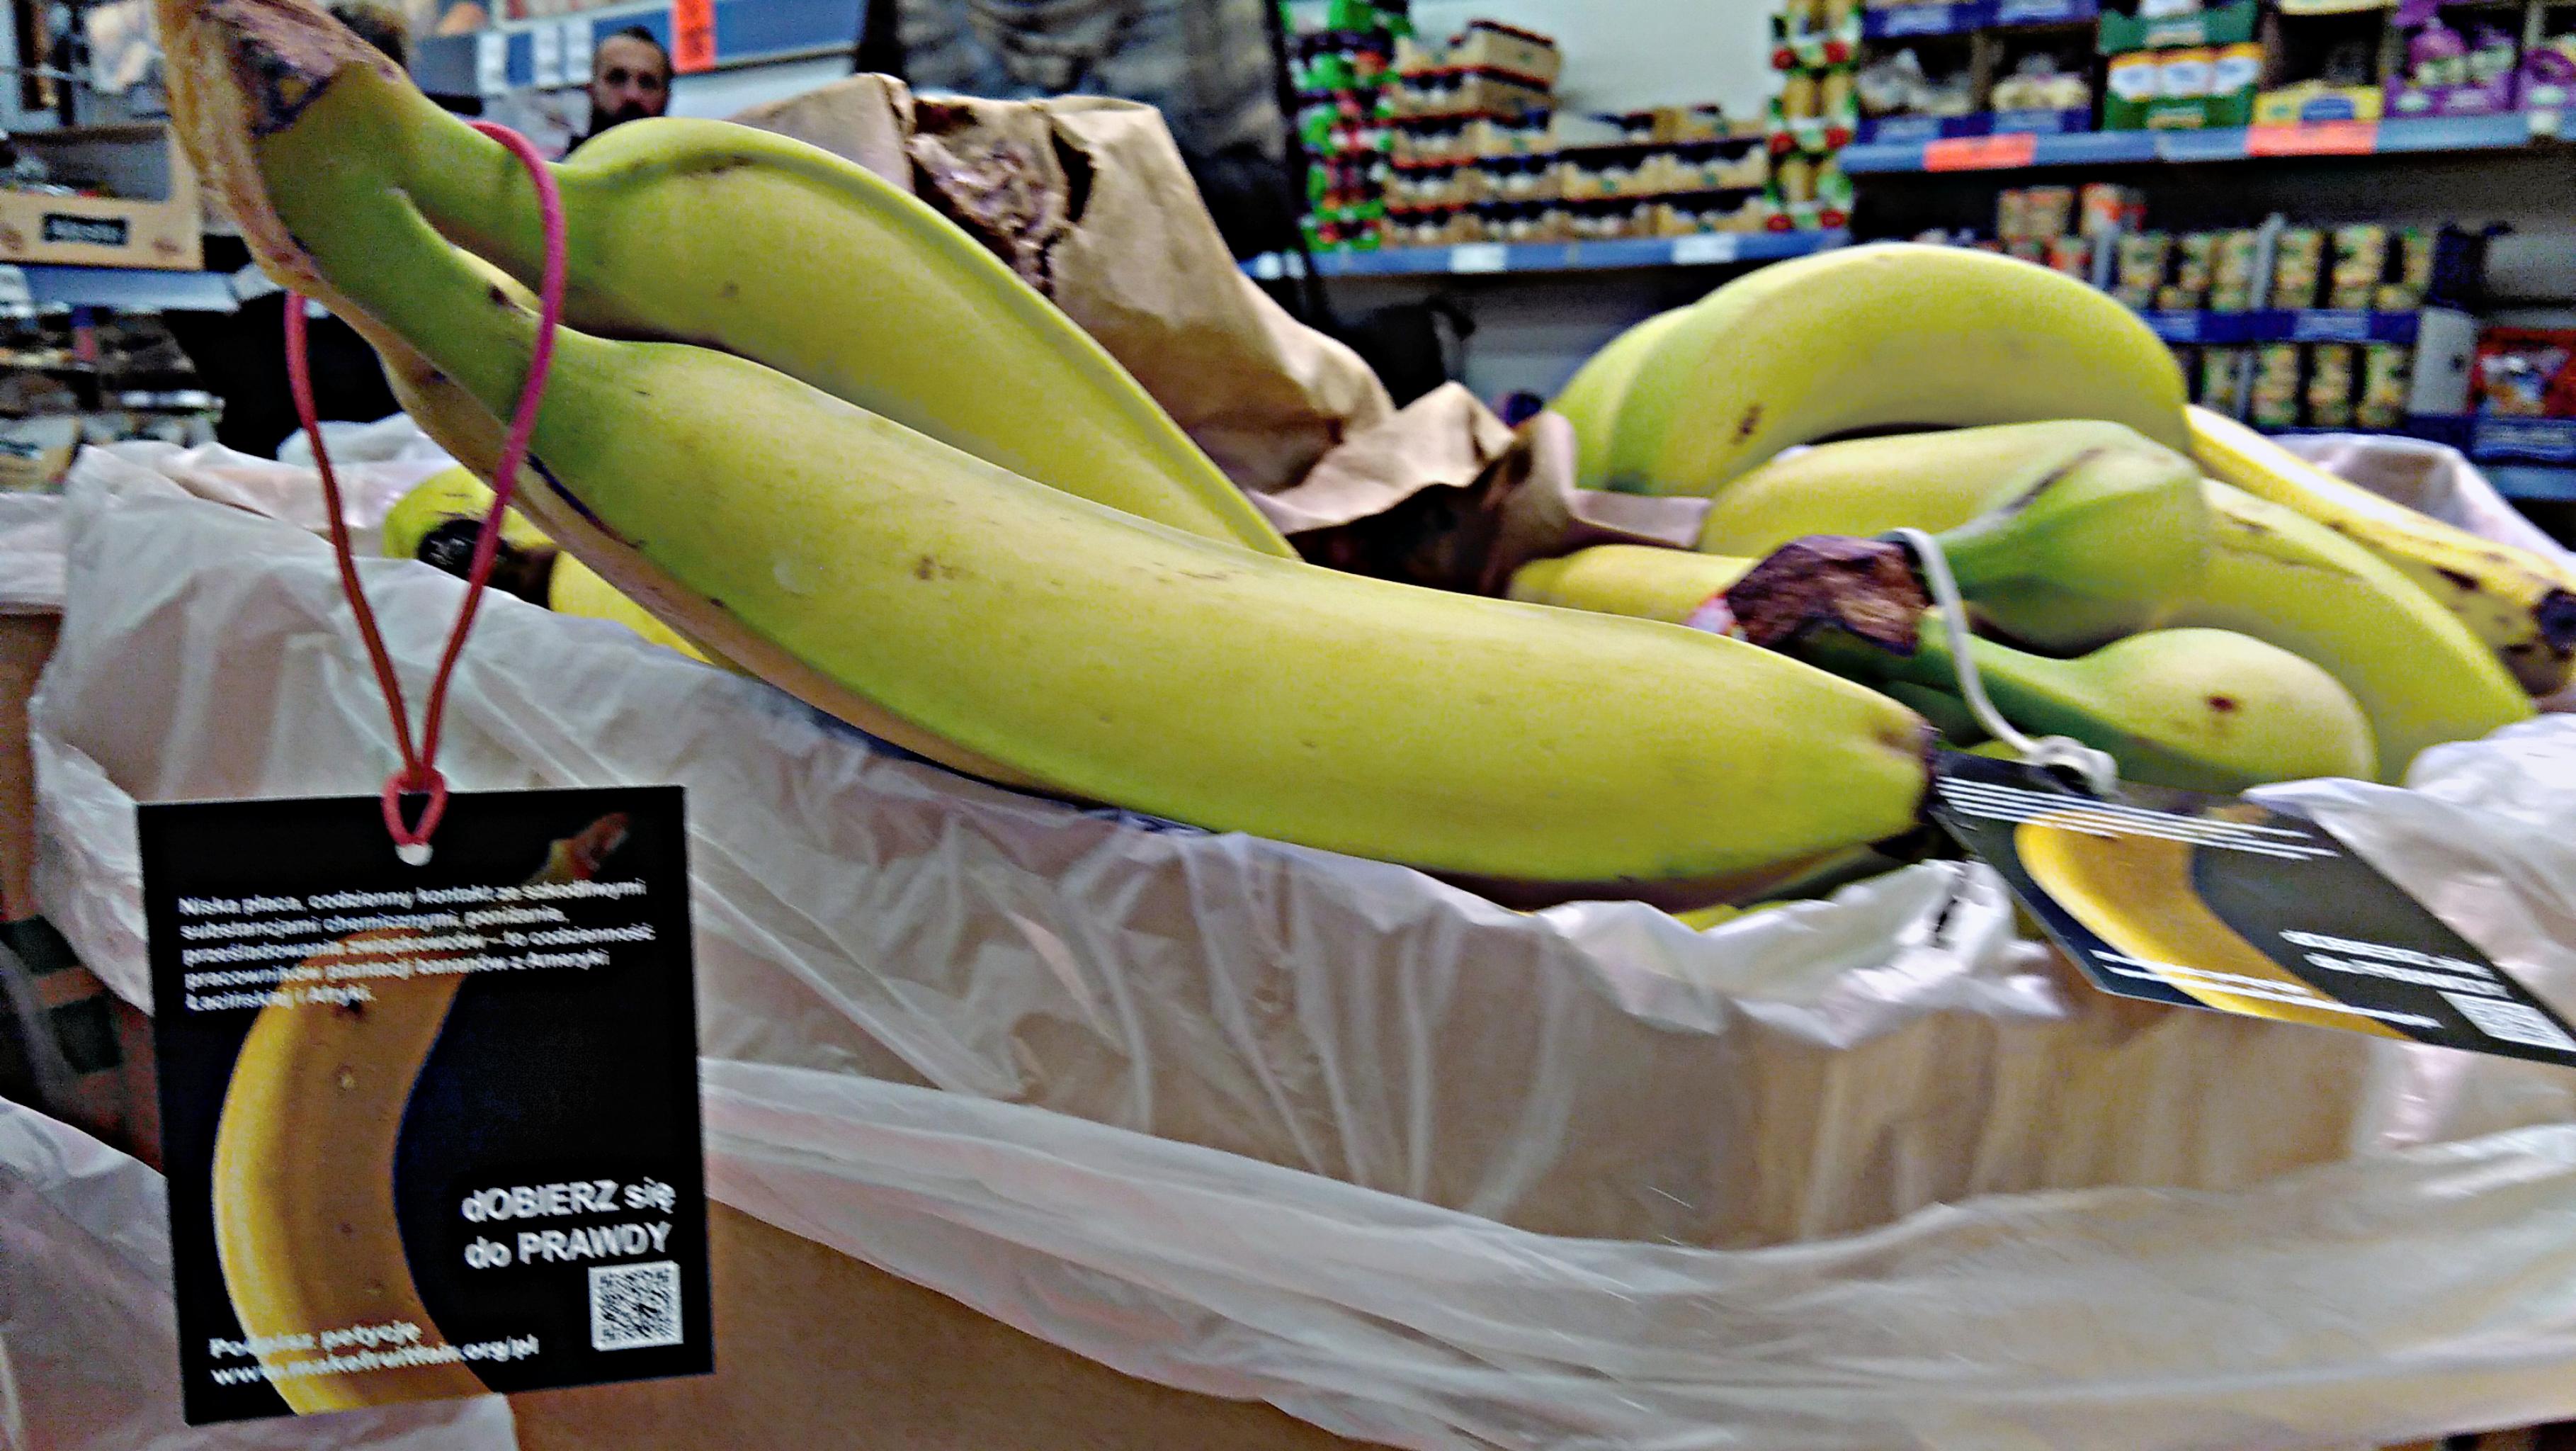 Anhänger mit Informationszetteln hängen an Bananen in Kisten im Supermarkt